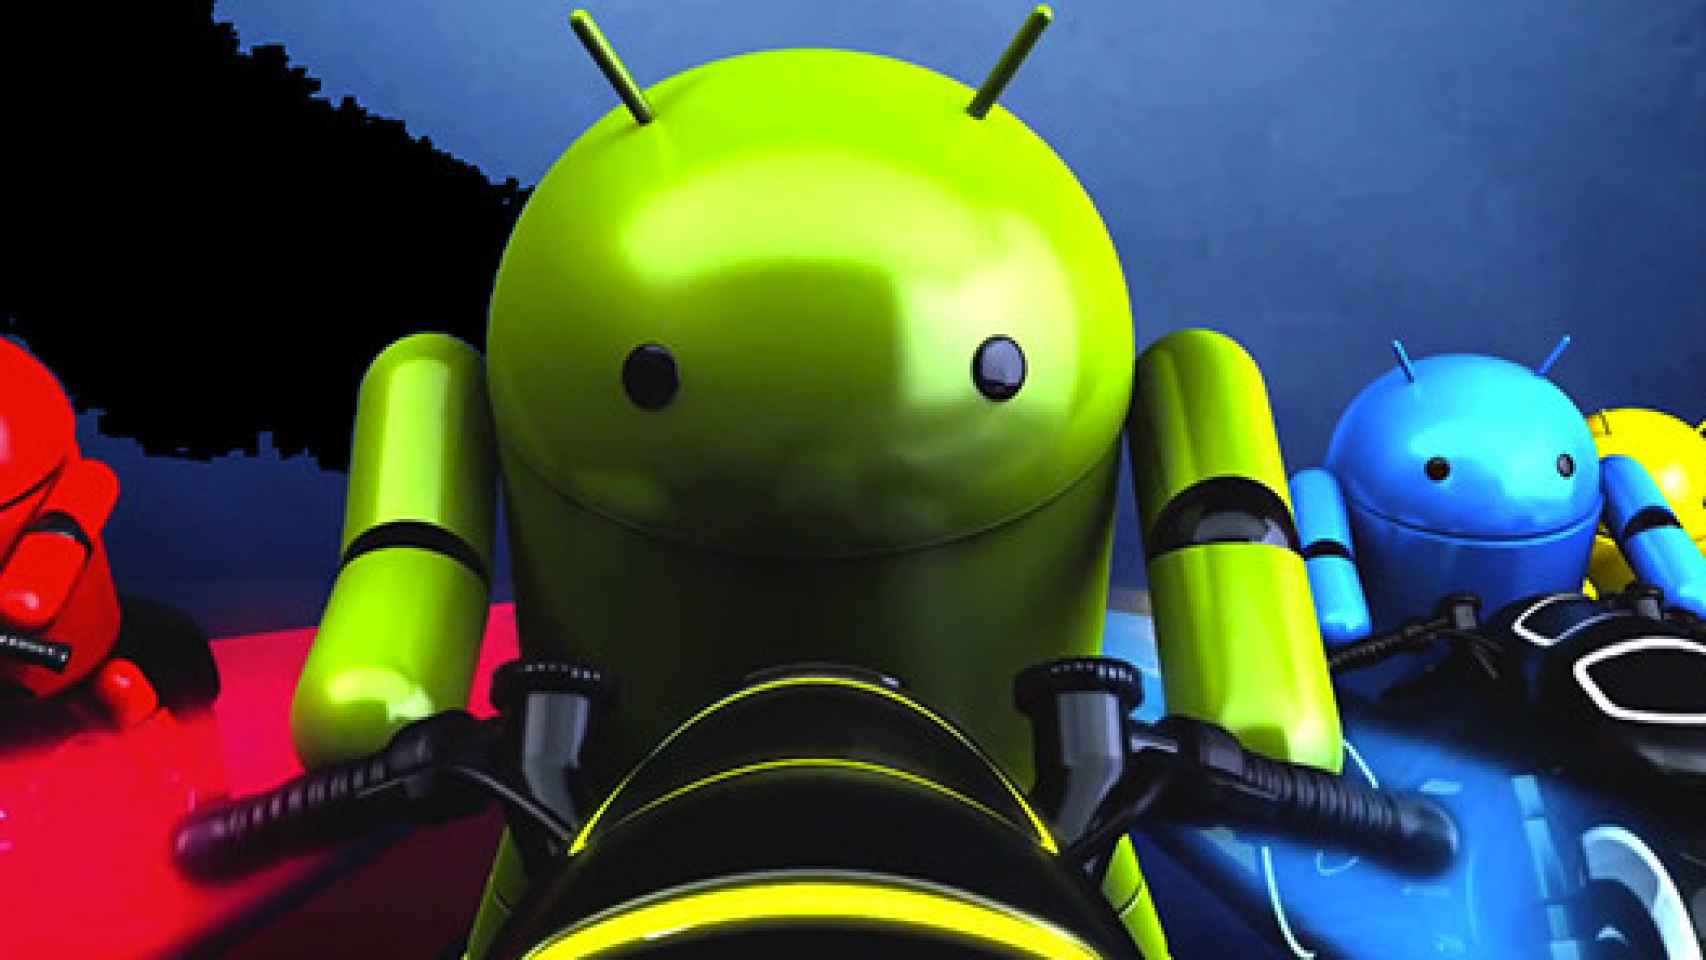 Videoreseña al completo del Galaxy Nexus y de Android Ice Cream Sandwich 4.0 (En italiano)